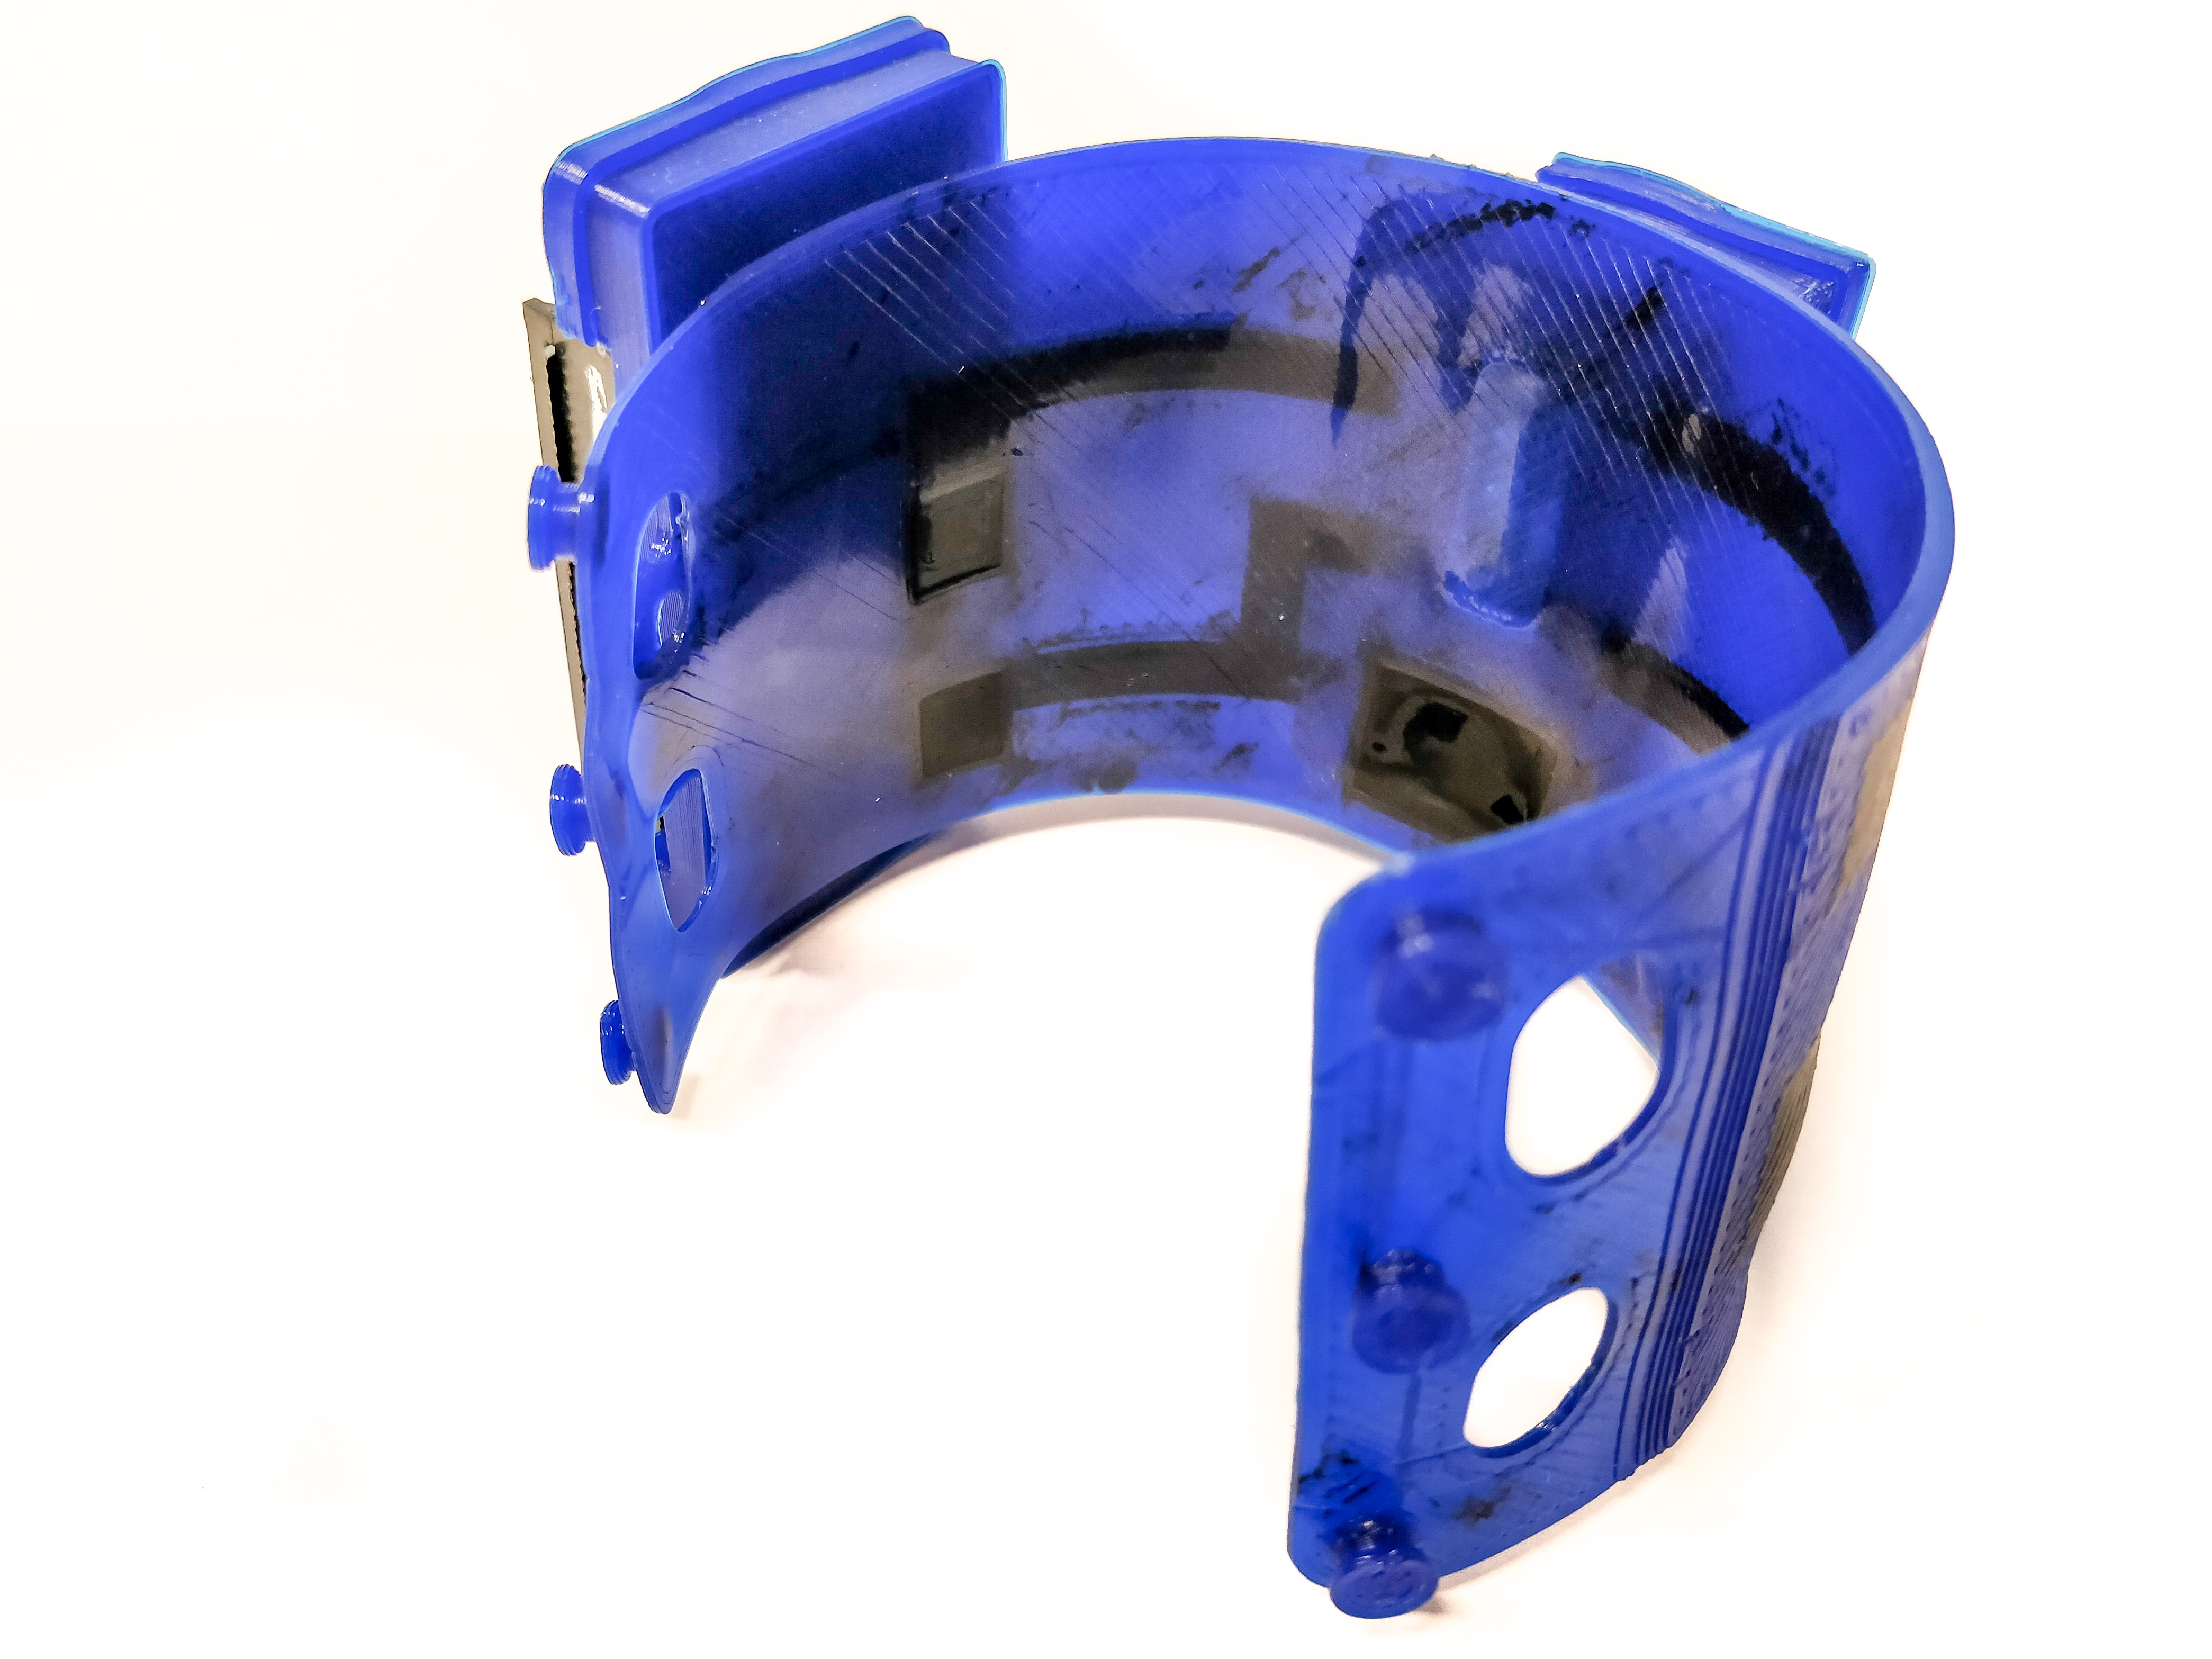 3D printed ETPU sEMG sensing